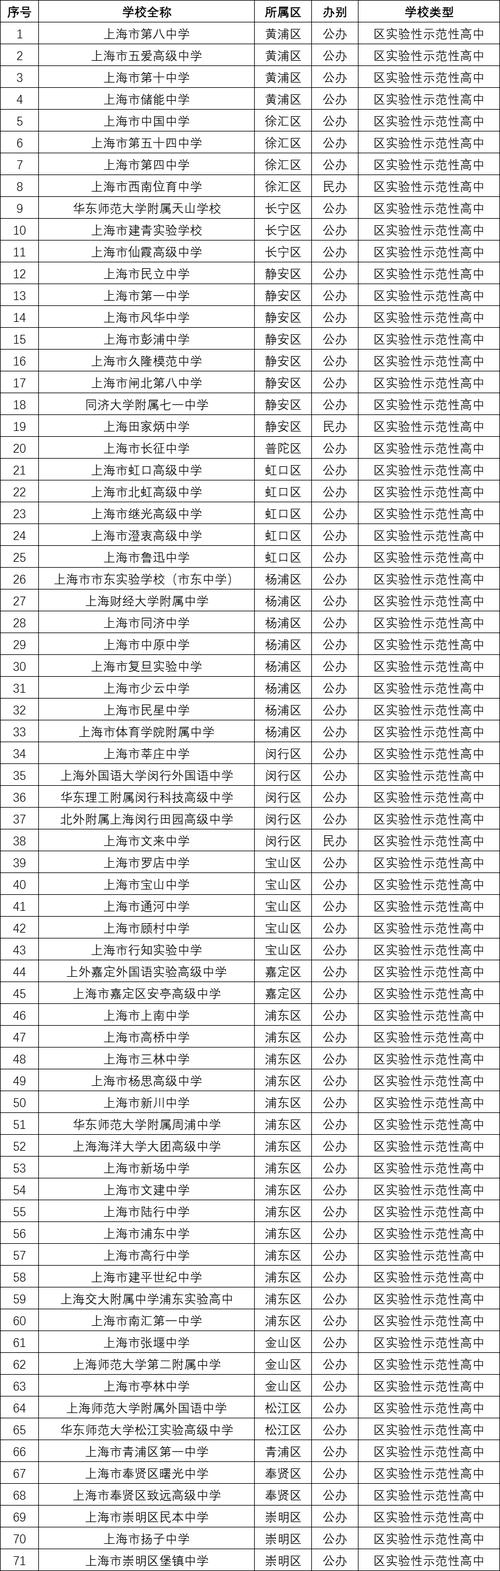 上海的中学排名